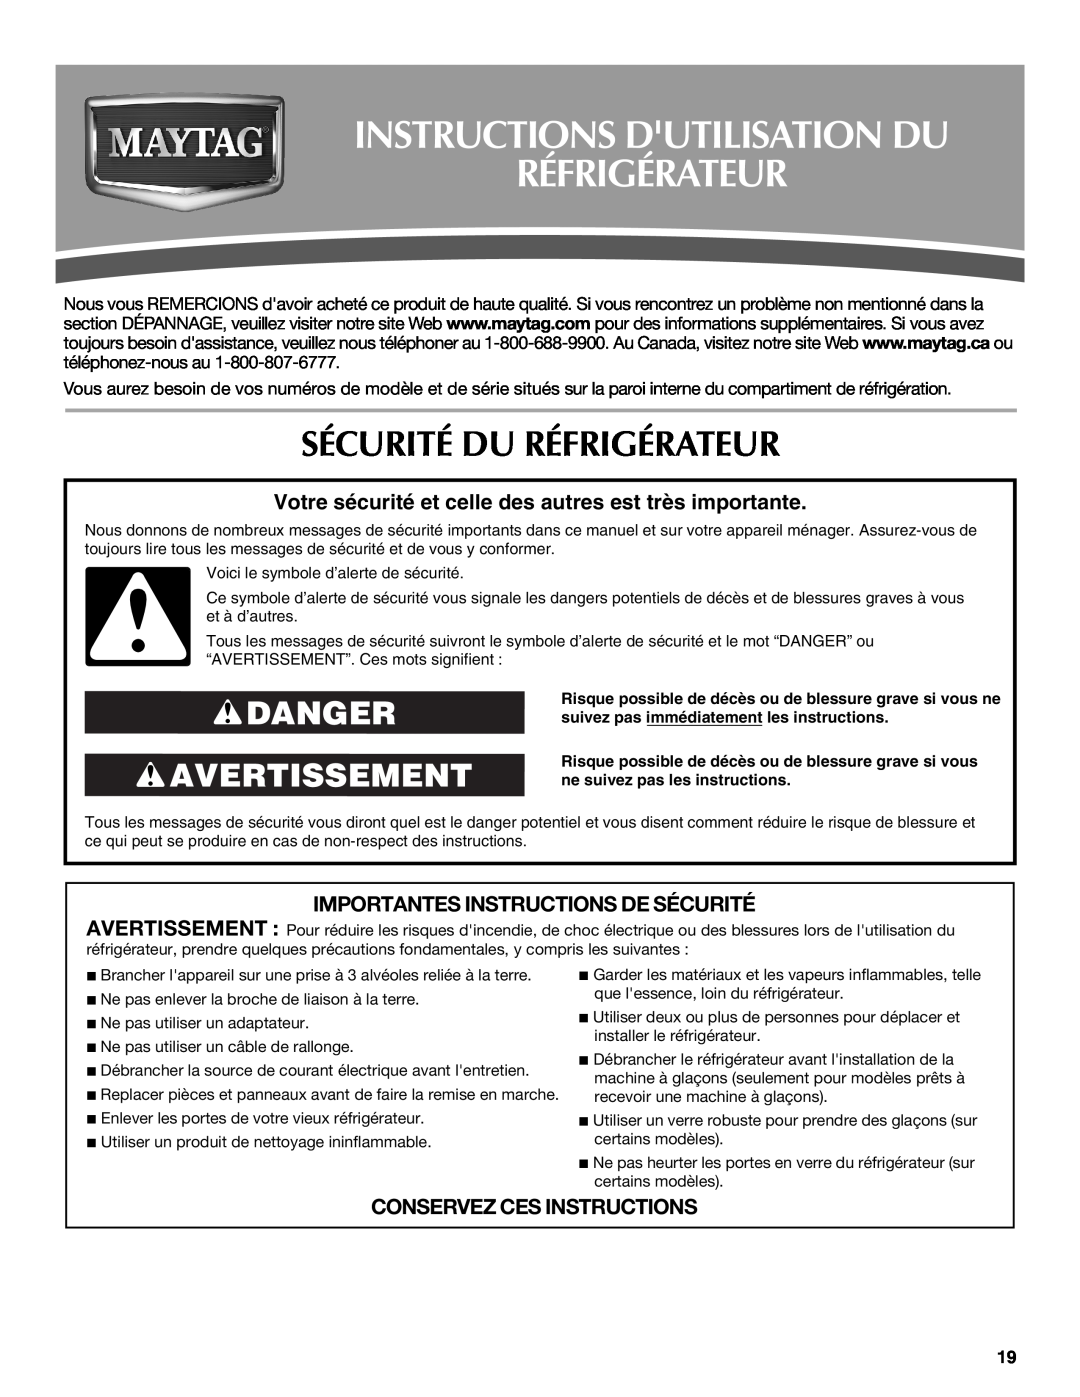 Maytag UKF8001AXX-200 Instructions Dutilisation Du Réfrigérateur, Sécurité Du Réfrigérateur, Danger Avertissement 